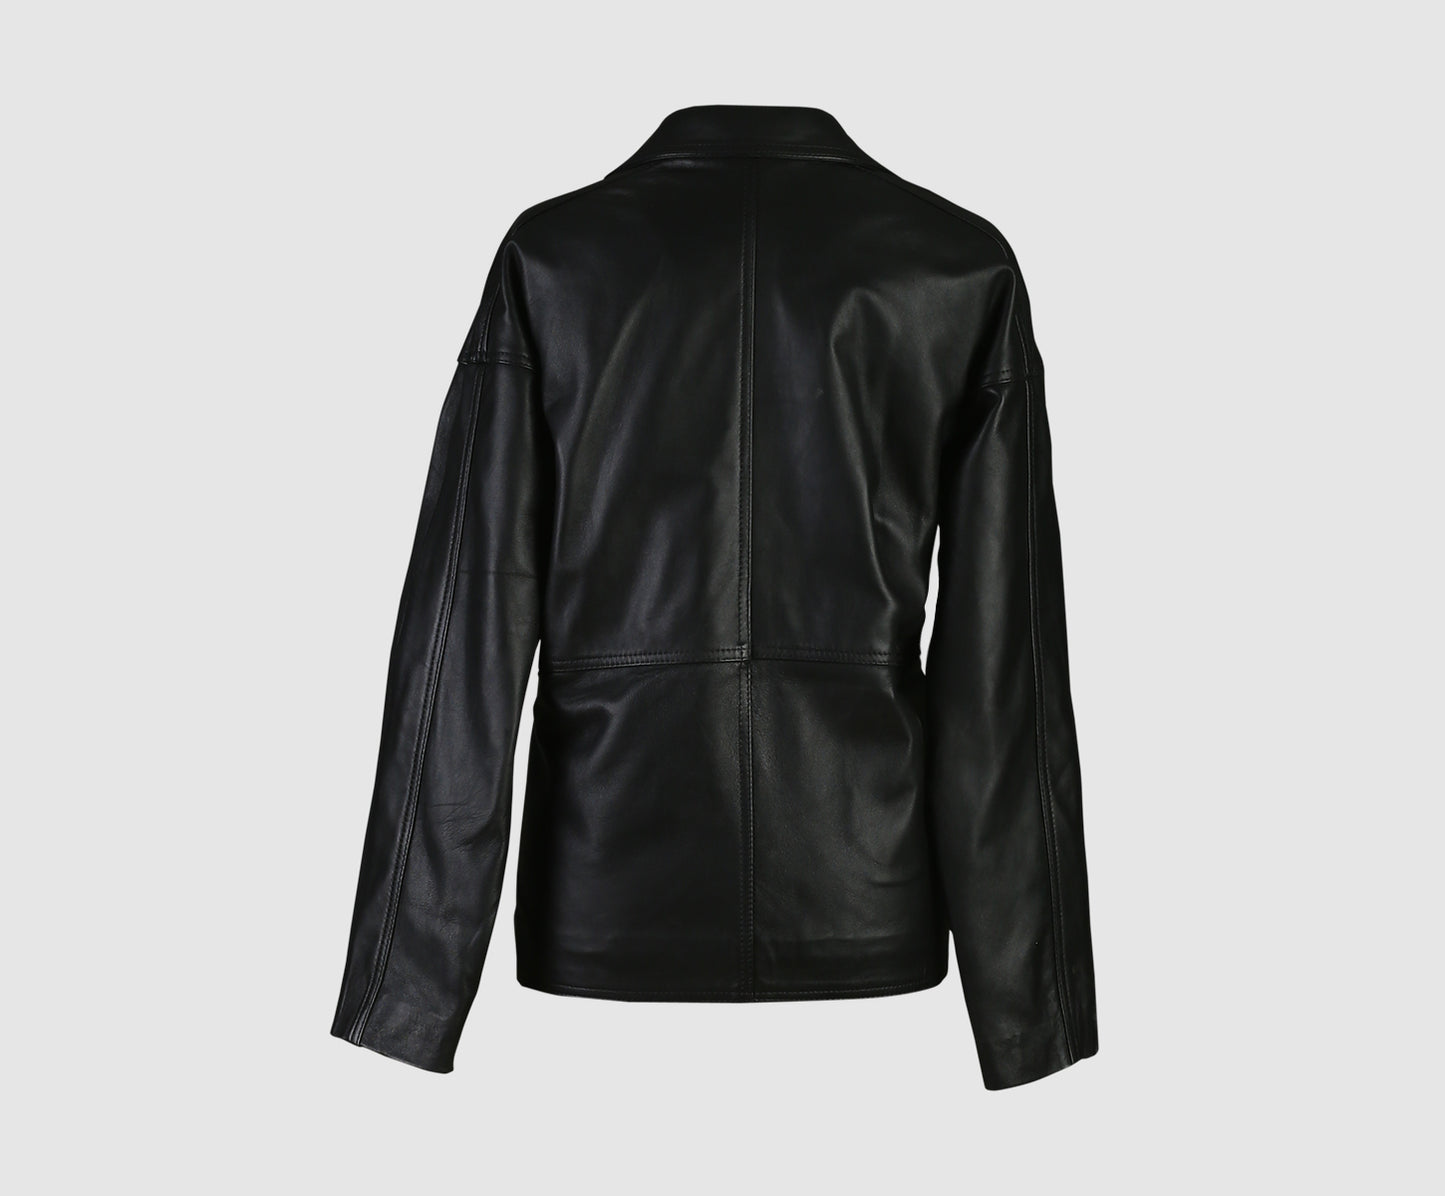 Sienna Leather Jacket Black